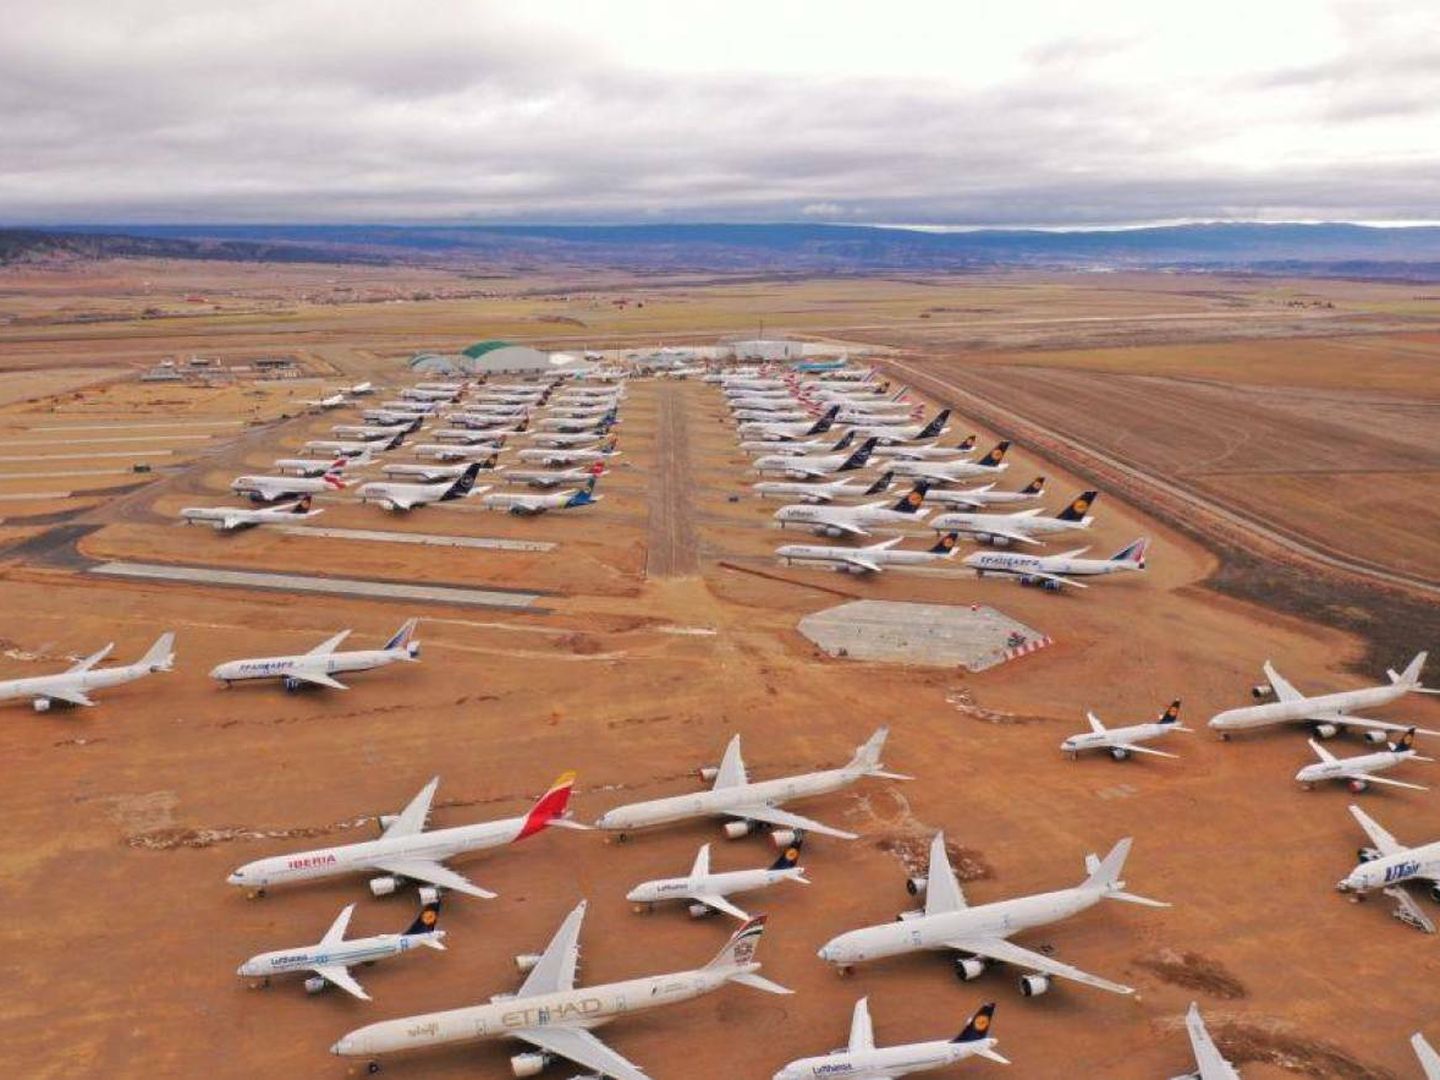 El aeropuerto de Teruel, un lugar donde se almacenan aviones. (EFE)